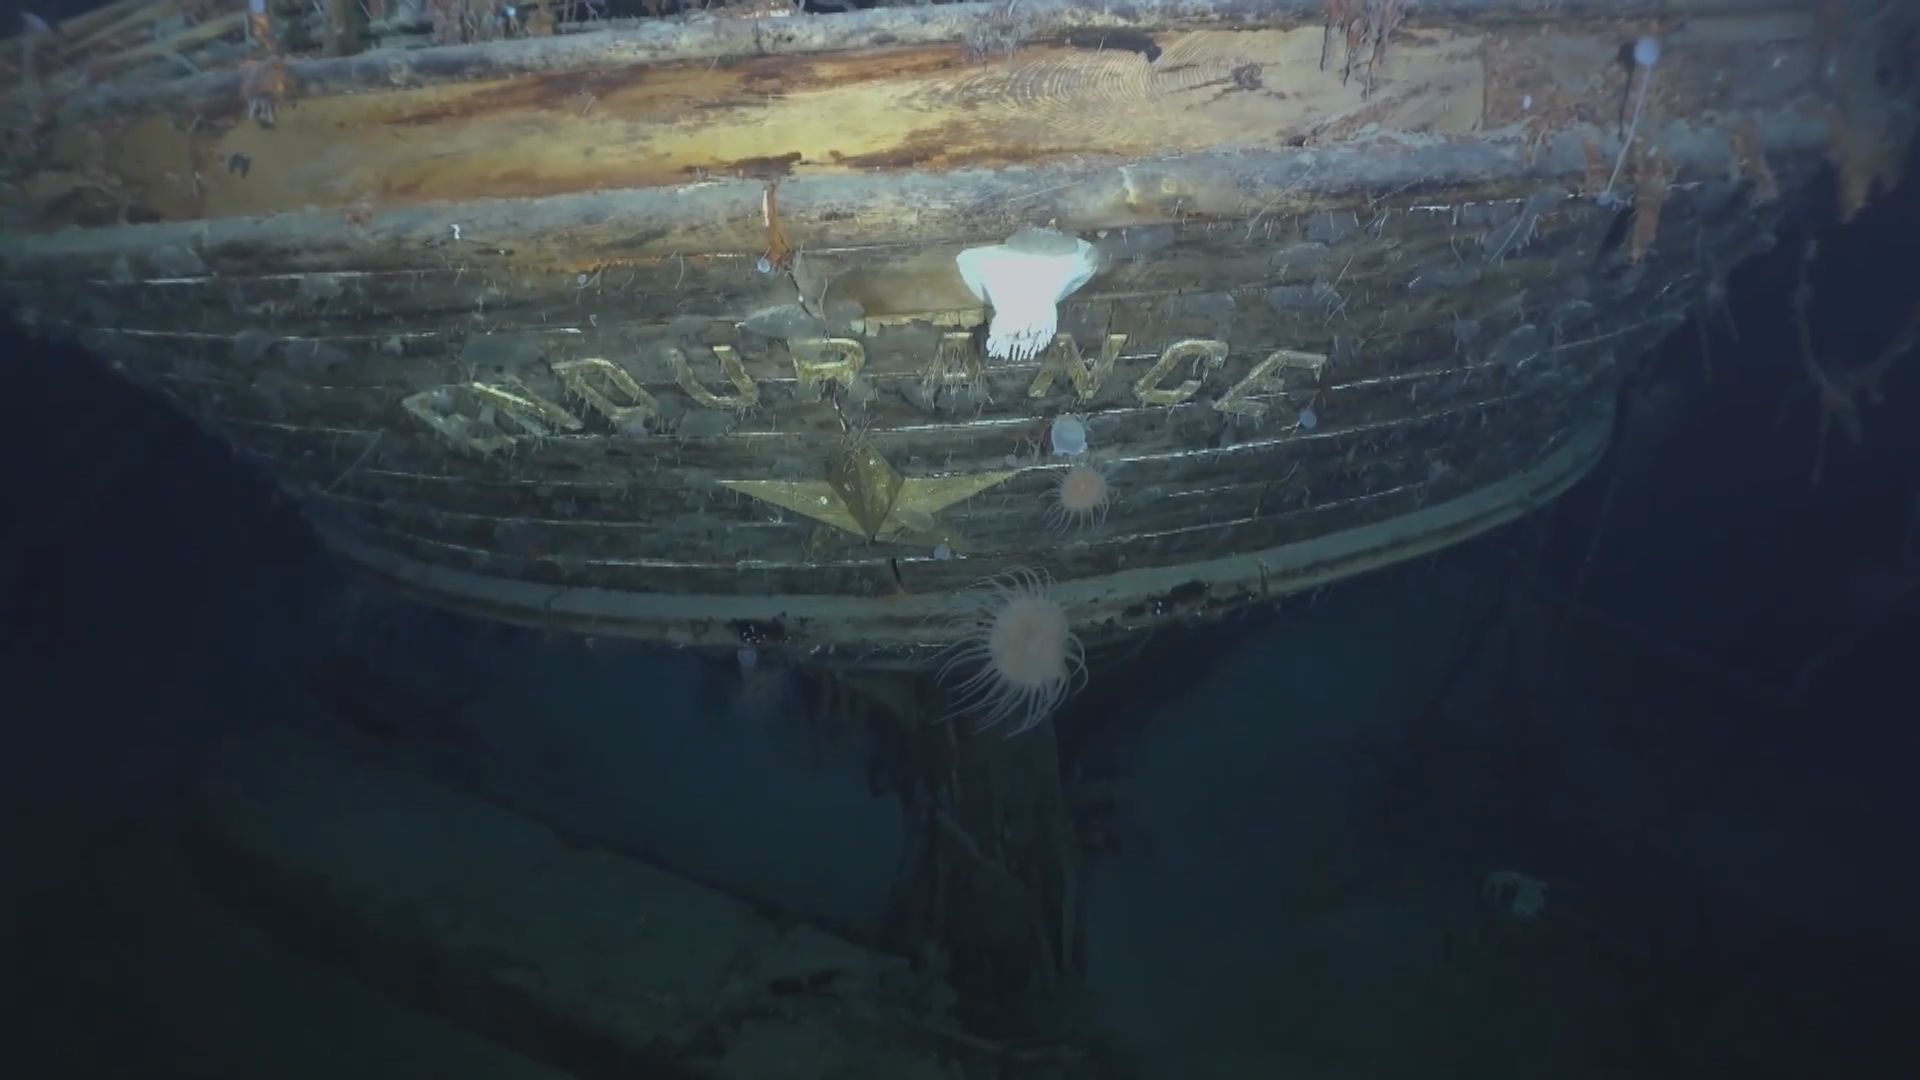 【環球薈報】考察隊發現沉沒逾百年的「堅忍號」殘骸